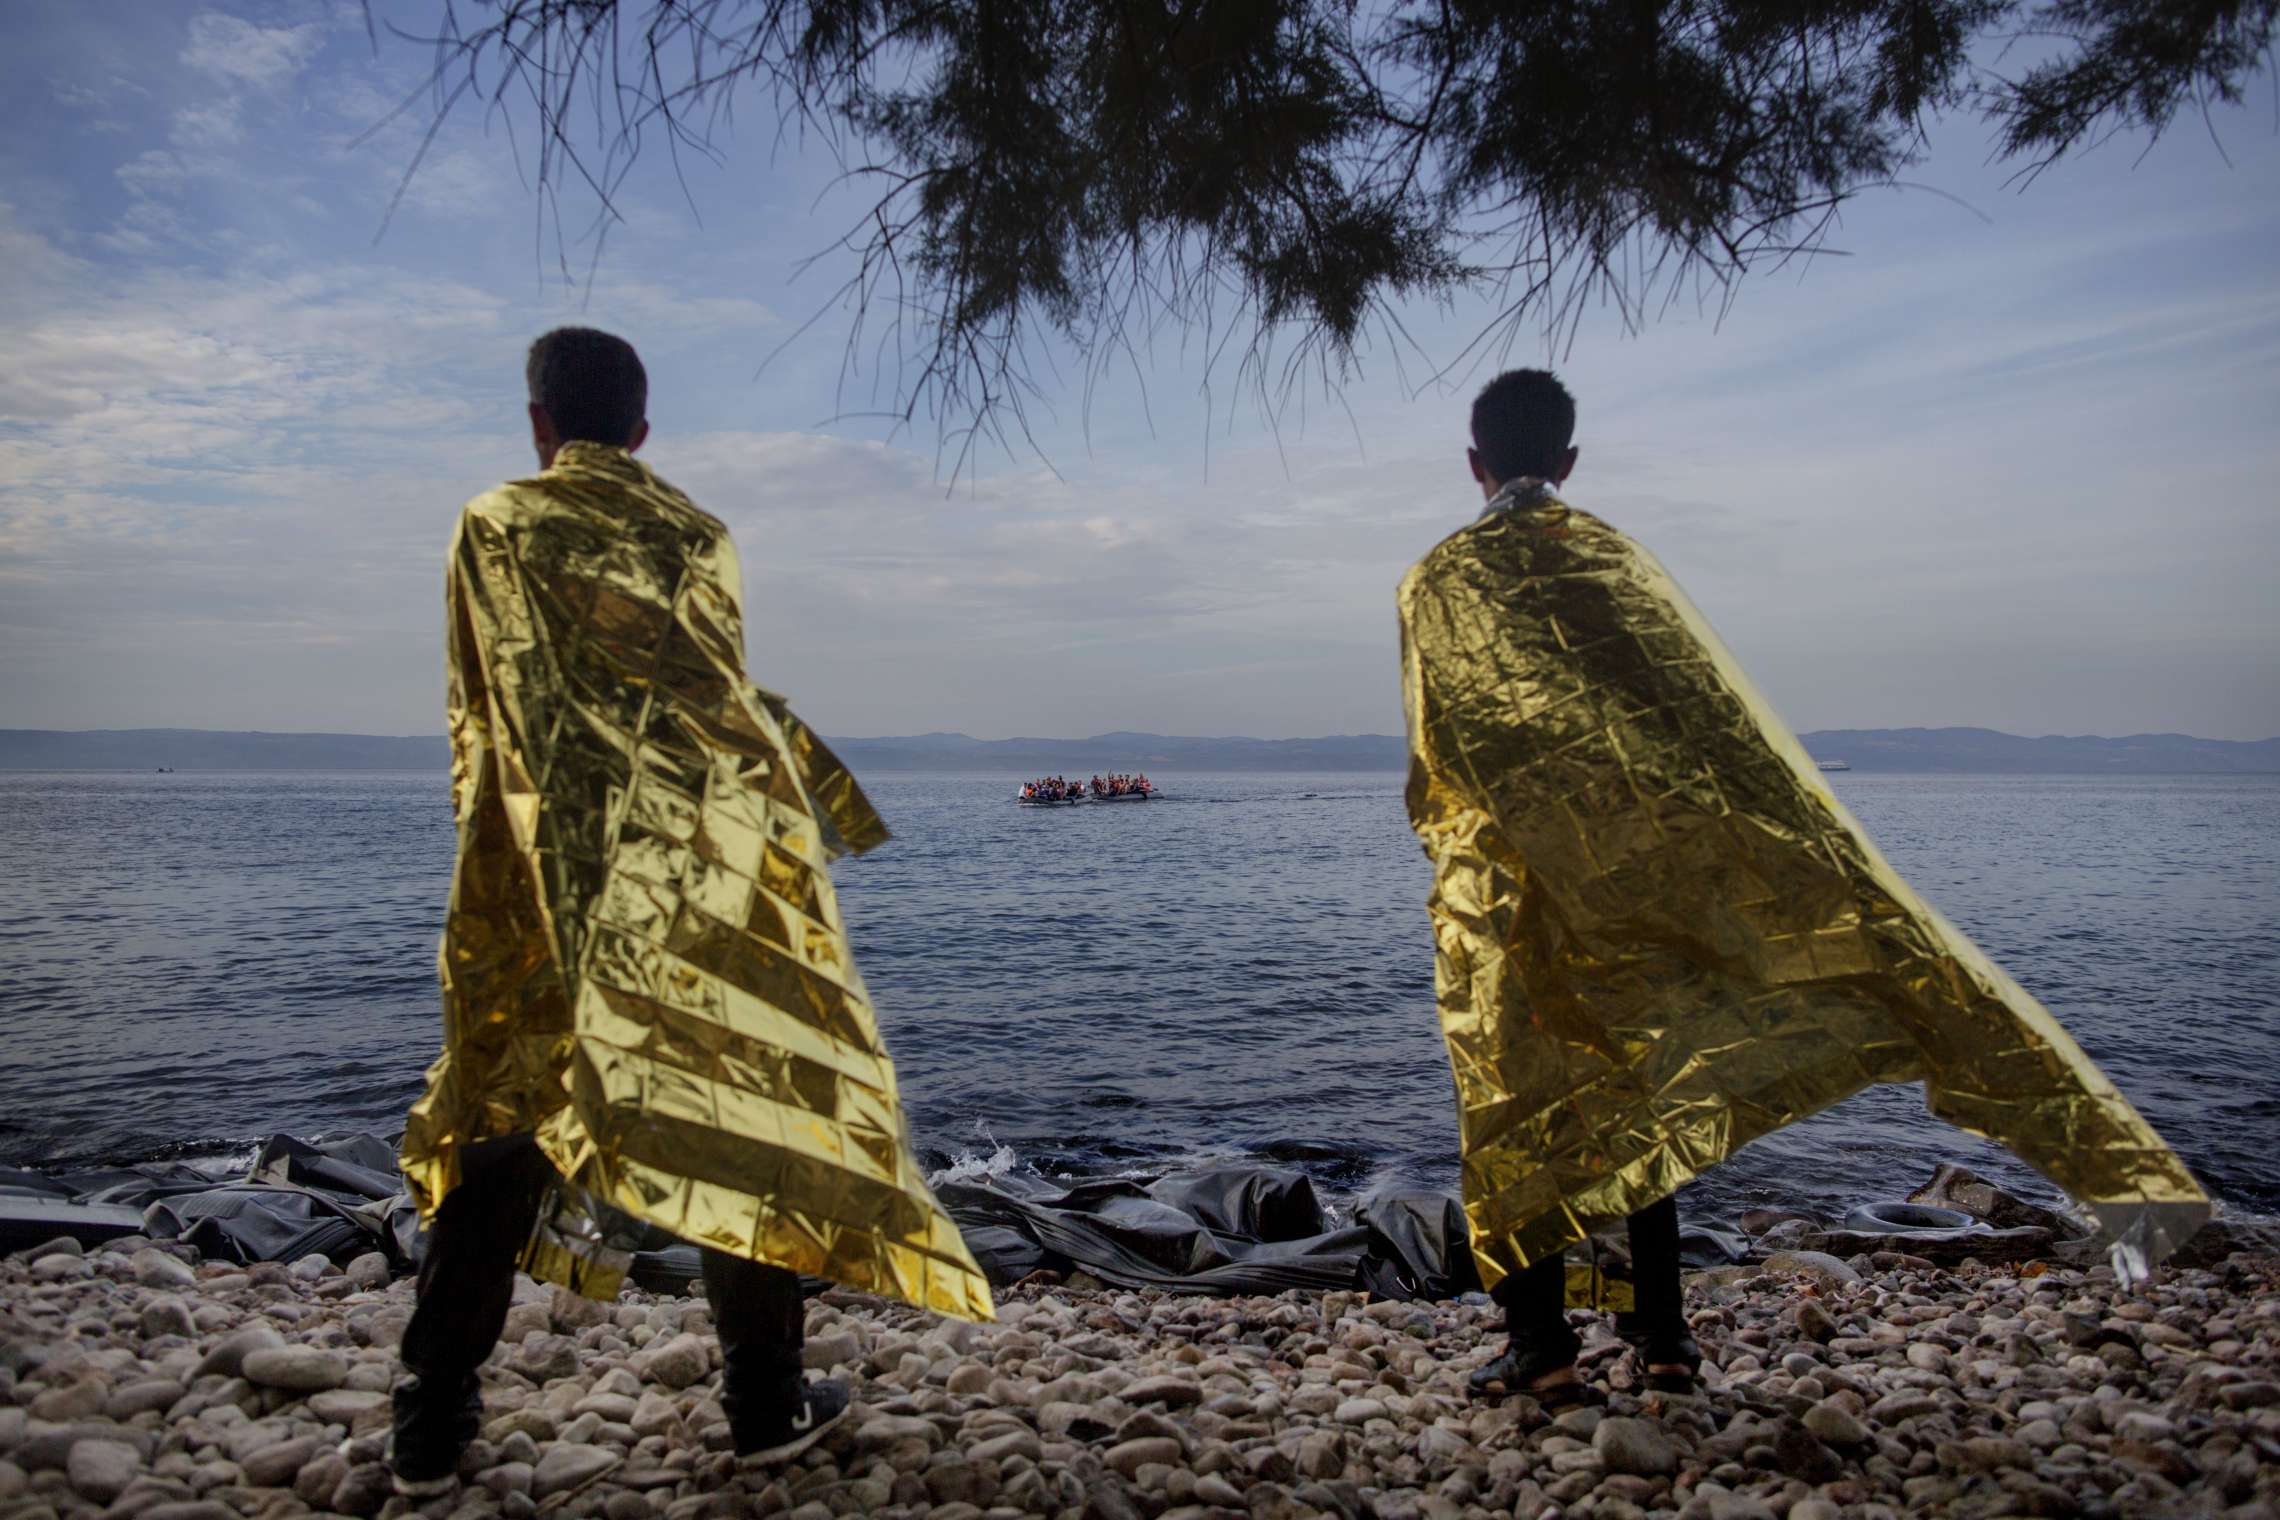 00619 14. Årets fotojournalist 09.09.2015 Flukten til Europa To menn som ankom Lesbos noen minutter tidligere, forsøker å få tilbake vamen med varmefolier delt ut av frivillige mens de ser to nye gummibåter med flyktninger ankomme. Denne dagen kom rundt 40 båter til den greske øya med mer enn 2.000 flyktninger. Over en million flyktninger har kommet til Europa i 2015 via sjøveien, en stor andel av dem syrere som rømmer fra den brutale borgerkrigen i deres hjemland. De aller fleste av dem har fulgt ruten gjennom Tyrkia, Hellas, Balkan til nord-Europa. Tusener har omkommet i overfylte båter på Middelhavet, desperate flyktninger har levd i overfylte leire, europeiske myndigheter har stått overfor den største flyktningkrisen på kontinentet siden 2. verdenskrig. Krisen har skapt splittelse i EU, grensegjerder har blitt bygget, men mest av alt har den bragt de globale utfordringene inn på vår dørstokk. Jeg fulgte i flyktningene fotspor, fra grensen mellom Syria og Tyrkia, til Hellas, Makedonia, Serbia, Kroatia, Slovenia til Tyskland.